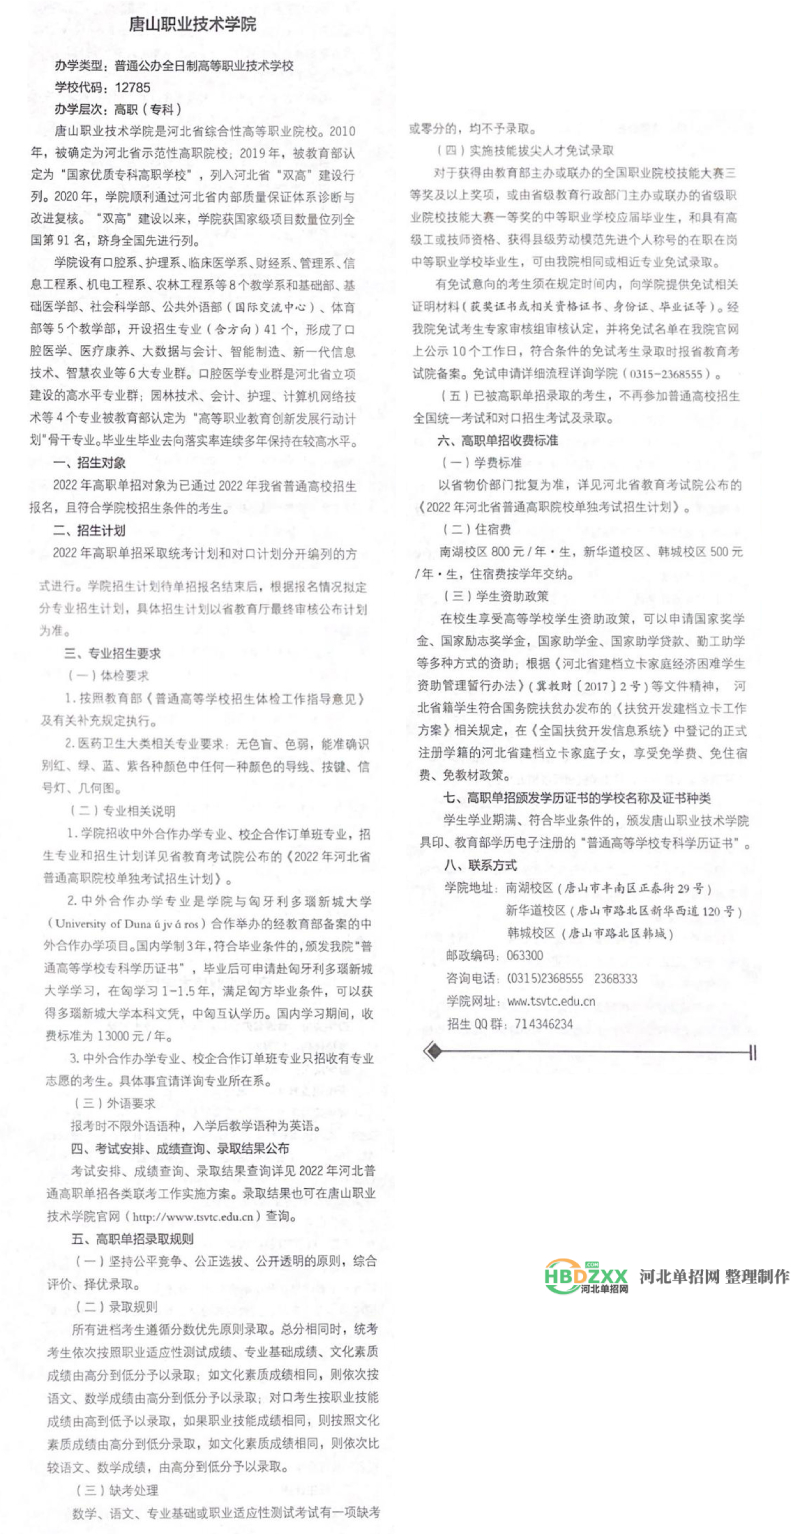 唐山职业技术学院2022年单招招生简章 图2